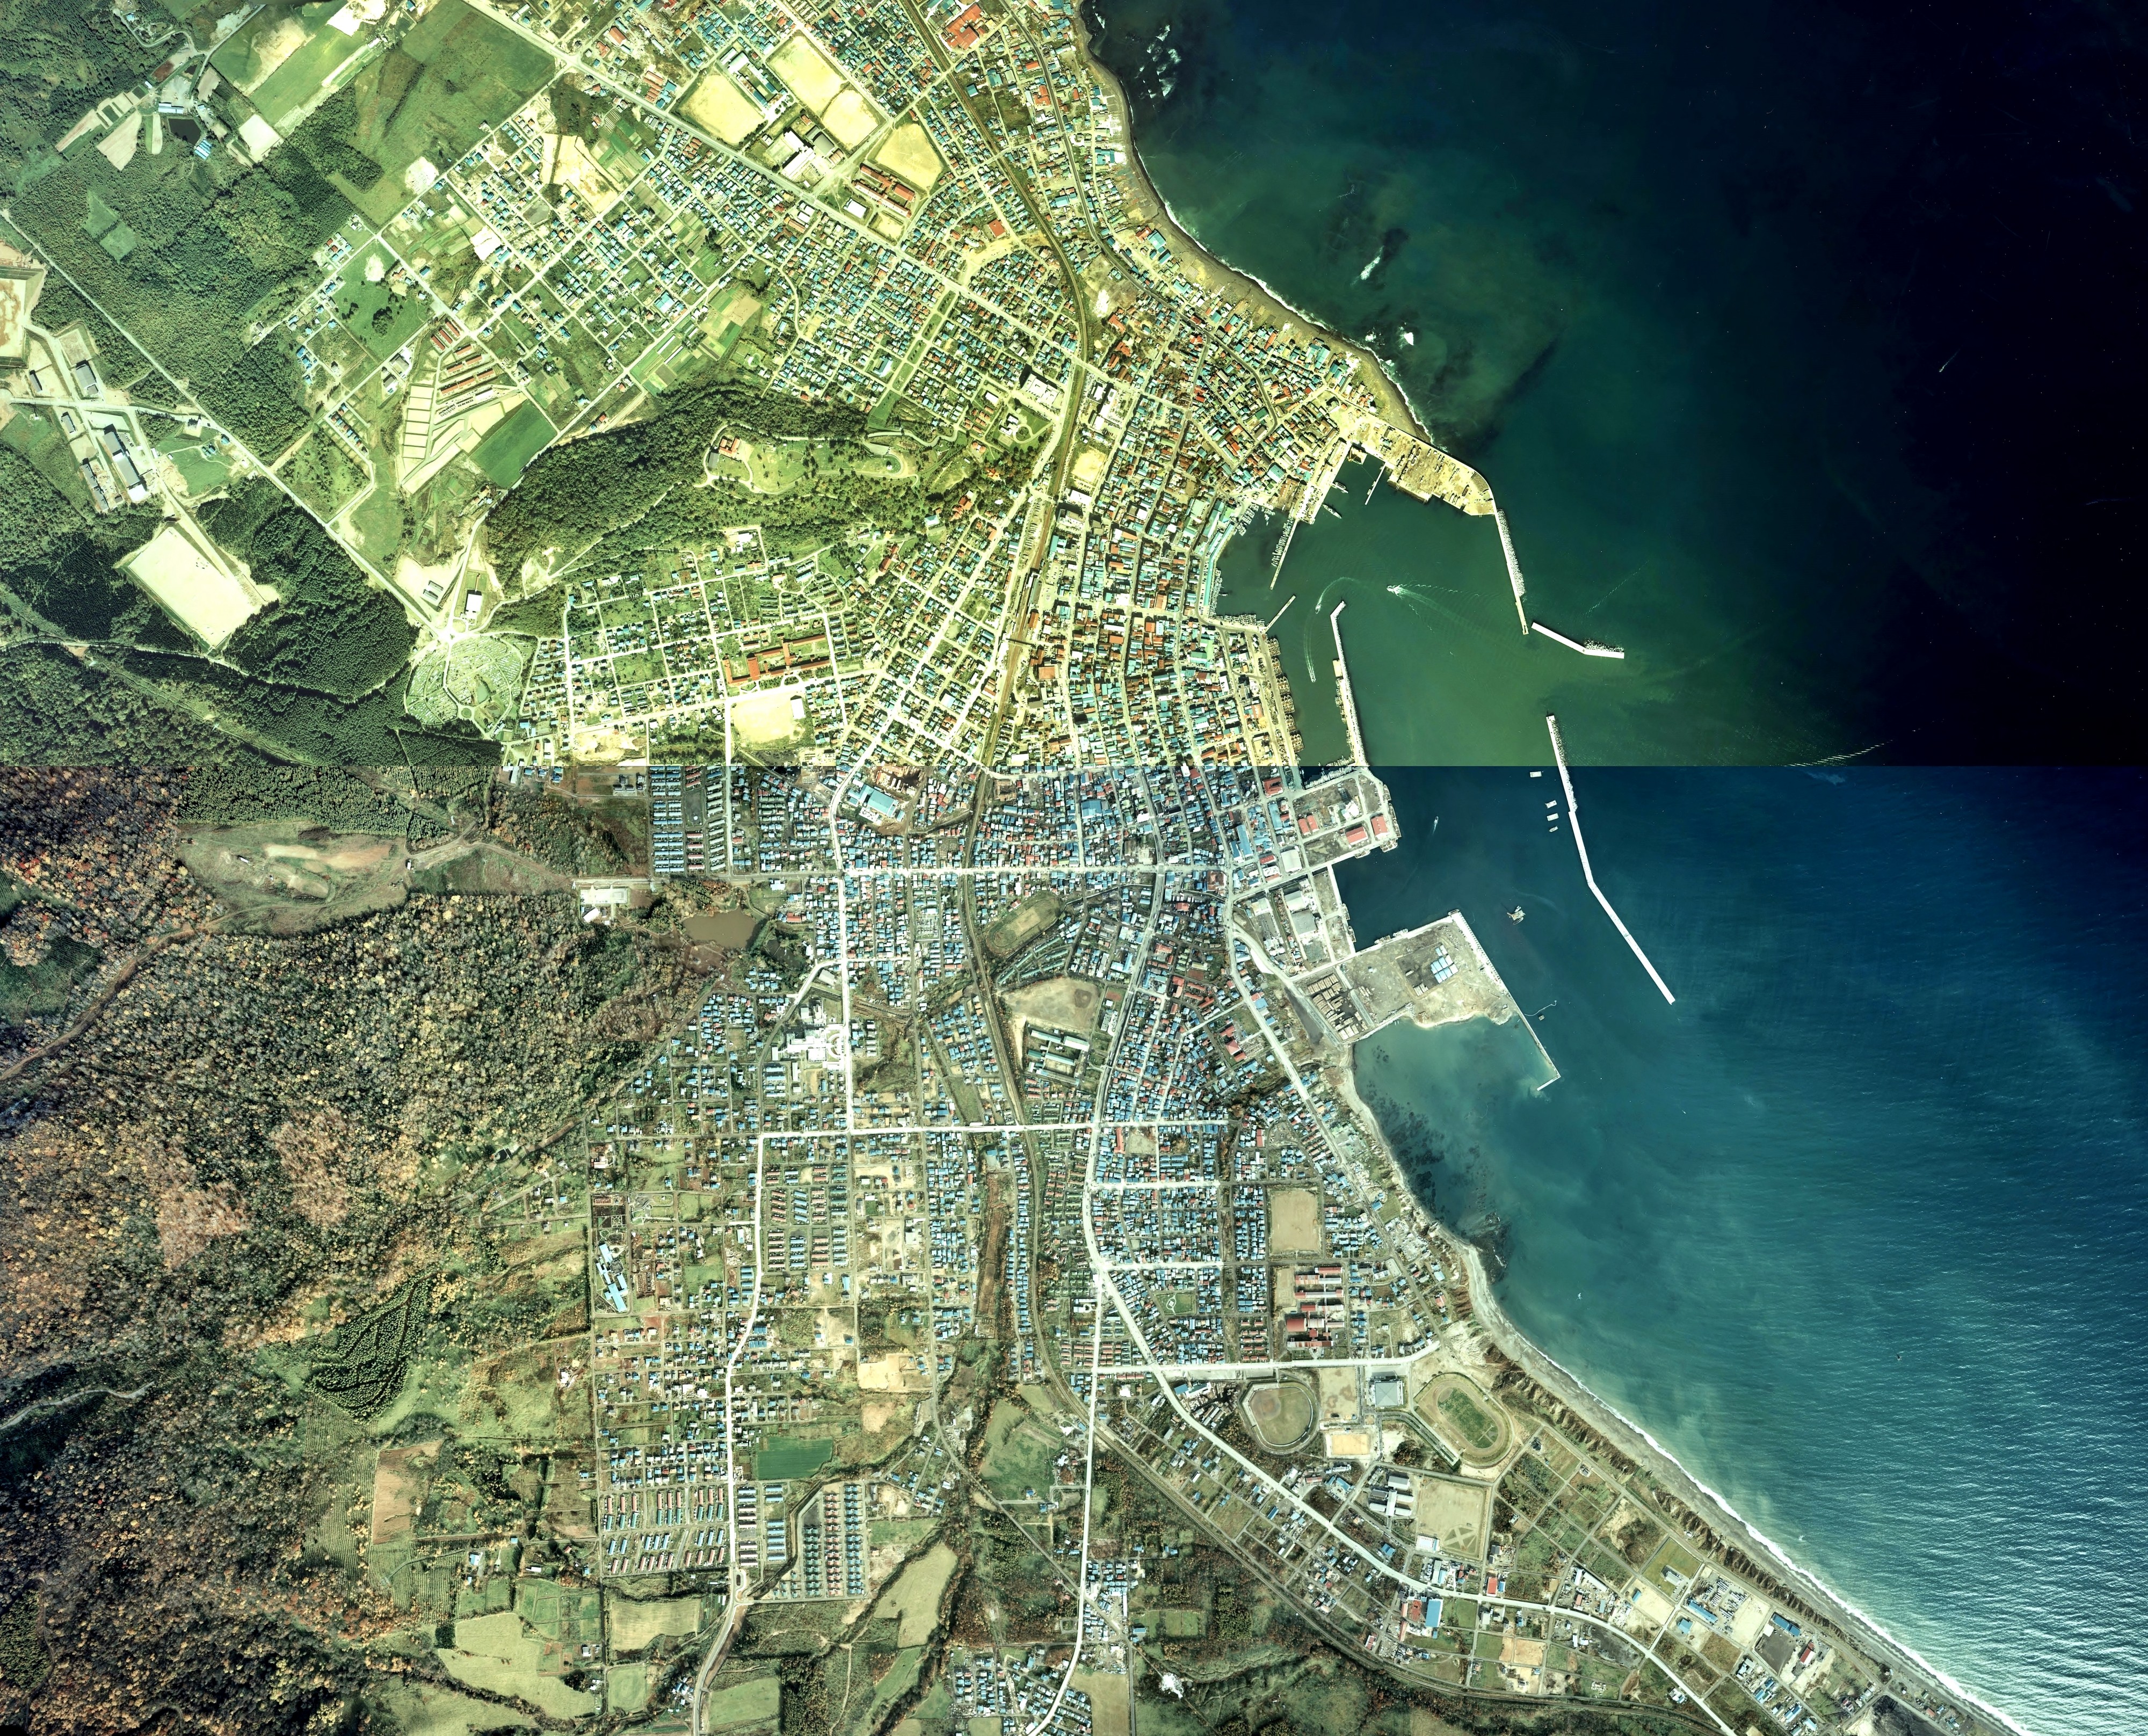 Monbetsu city center area Aerial photograph.1978